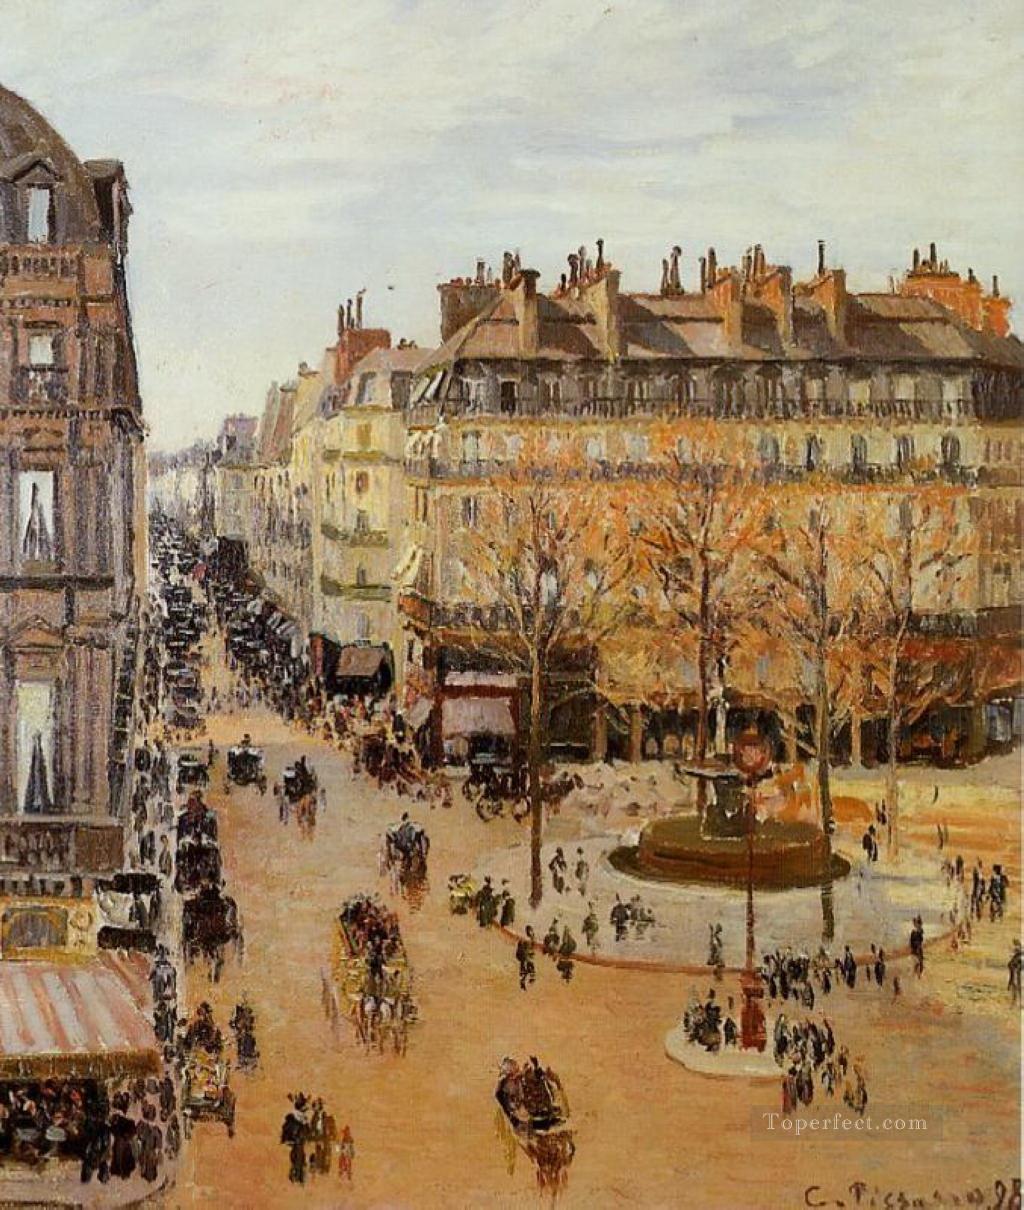 サントノーレ通り 太陽の効果の午後 1898年 カミーユ・ピサロ パリジャン油絵